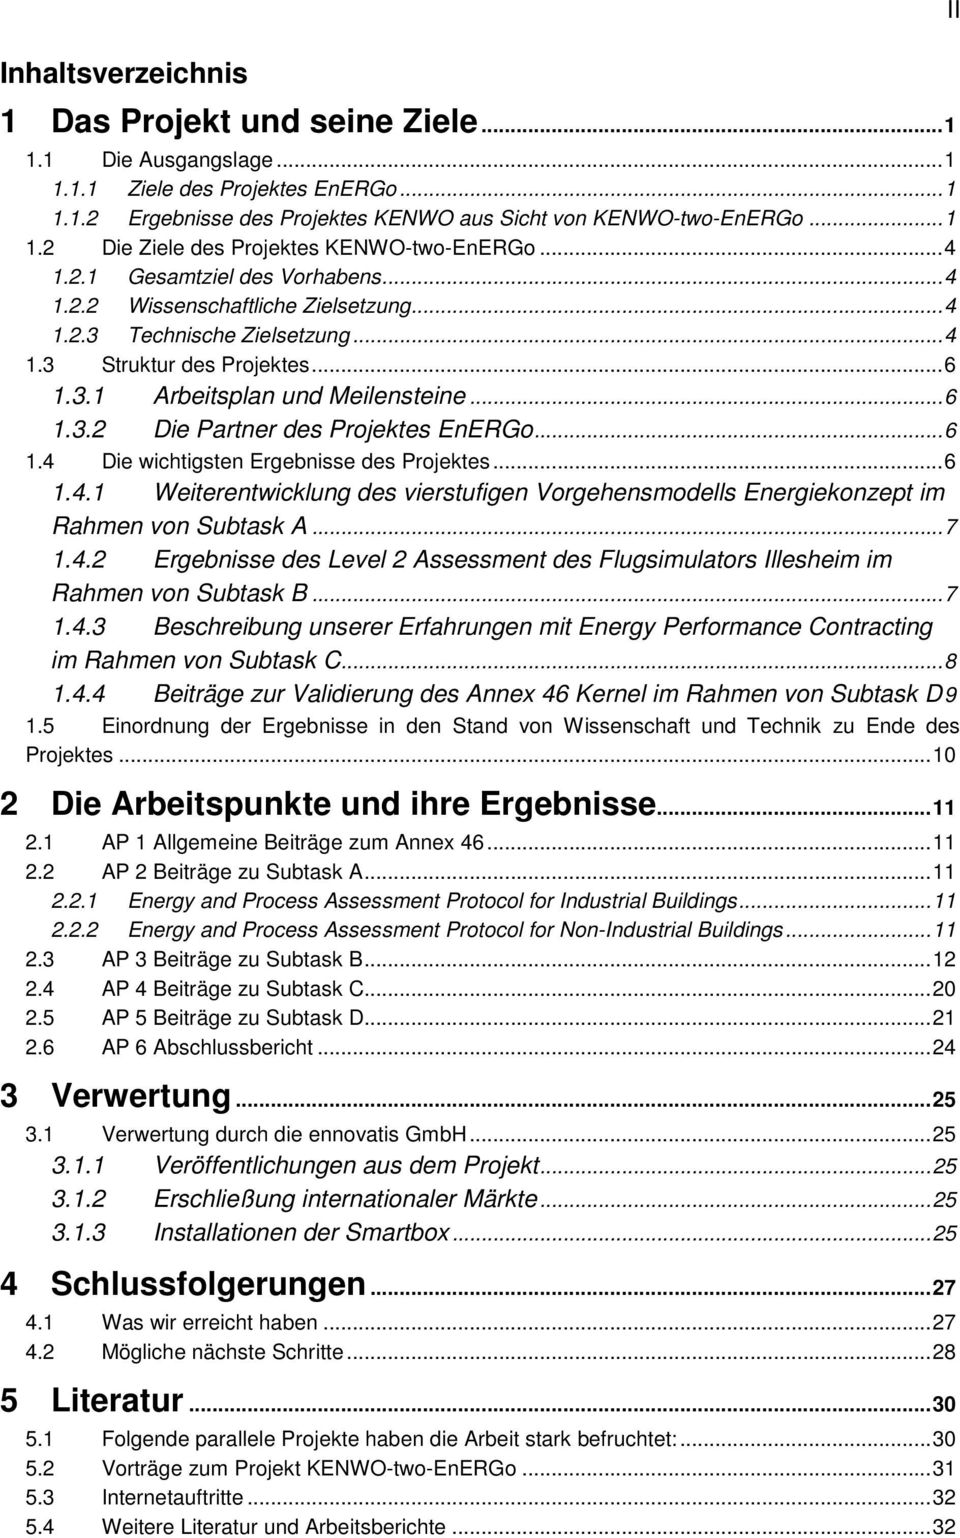 ..6 1.4 Die wichtigsten Ergebnisse des Projektes...6 1.4.1 Weiterentwicklung des vierstufigen Vorgehensmodells Energiekonzept im Rahmen von Subtask A...7 1.4.2 Ergebnisse des Level 2 Assessment des Flugsimulators Illesheim im Rahmen von Subtask B.